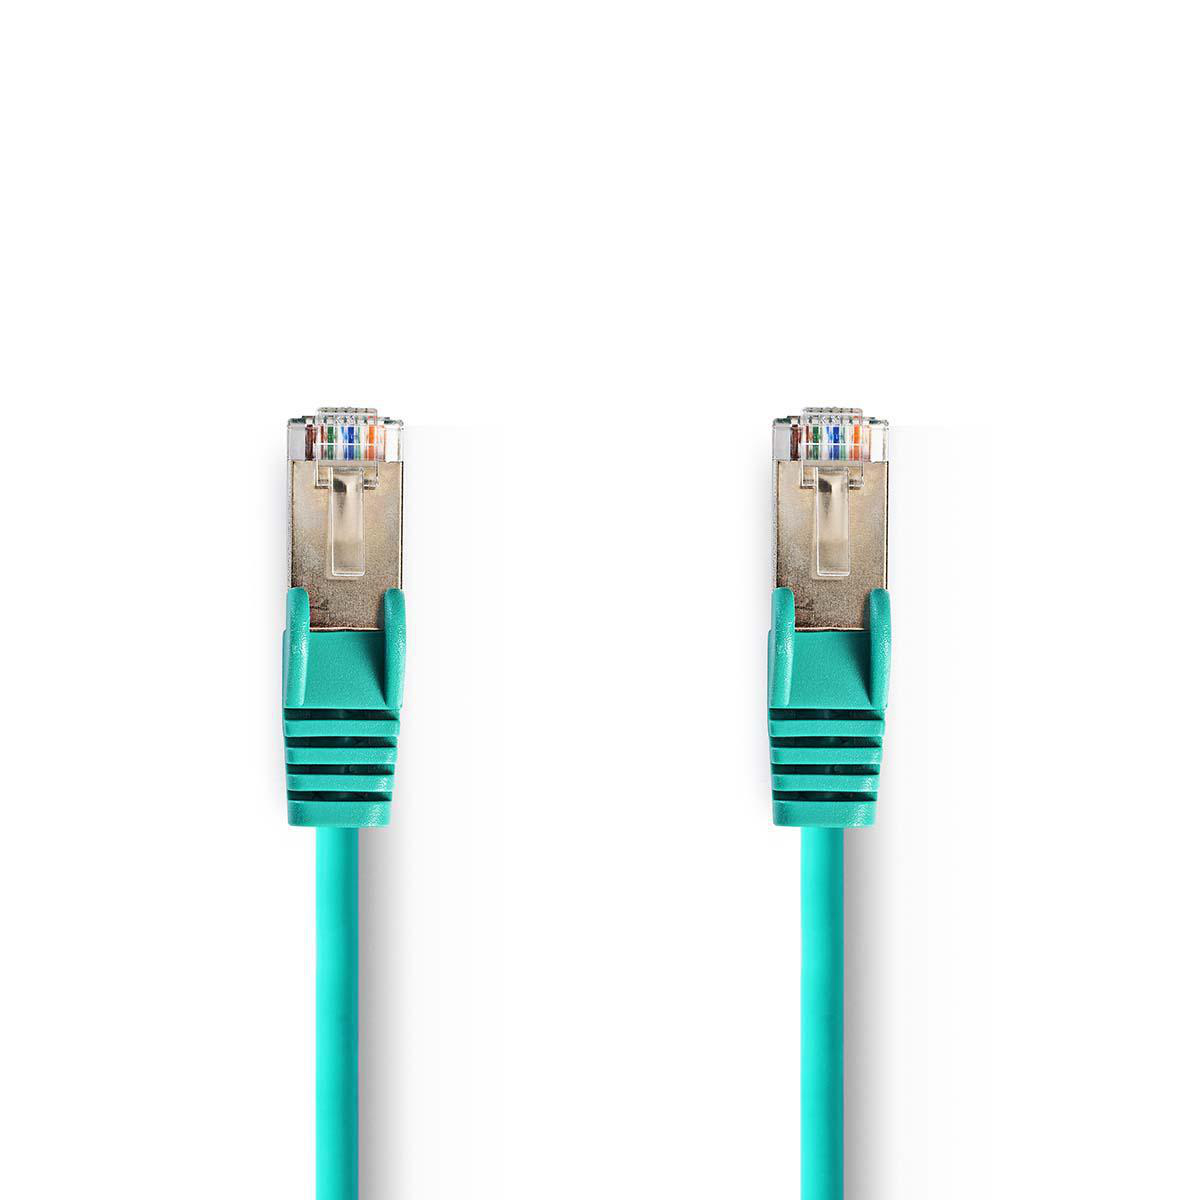 Nedis síťový kabel SF/UTP CAT5e, zástrčka RJ45 - zástrčka RJ45, 5 m, zelená (CCGP85121GN50)